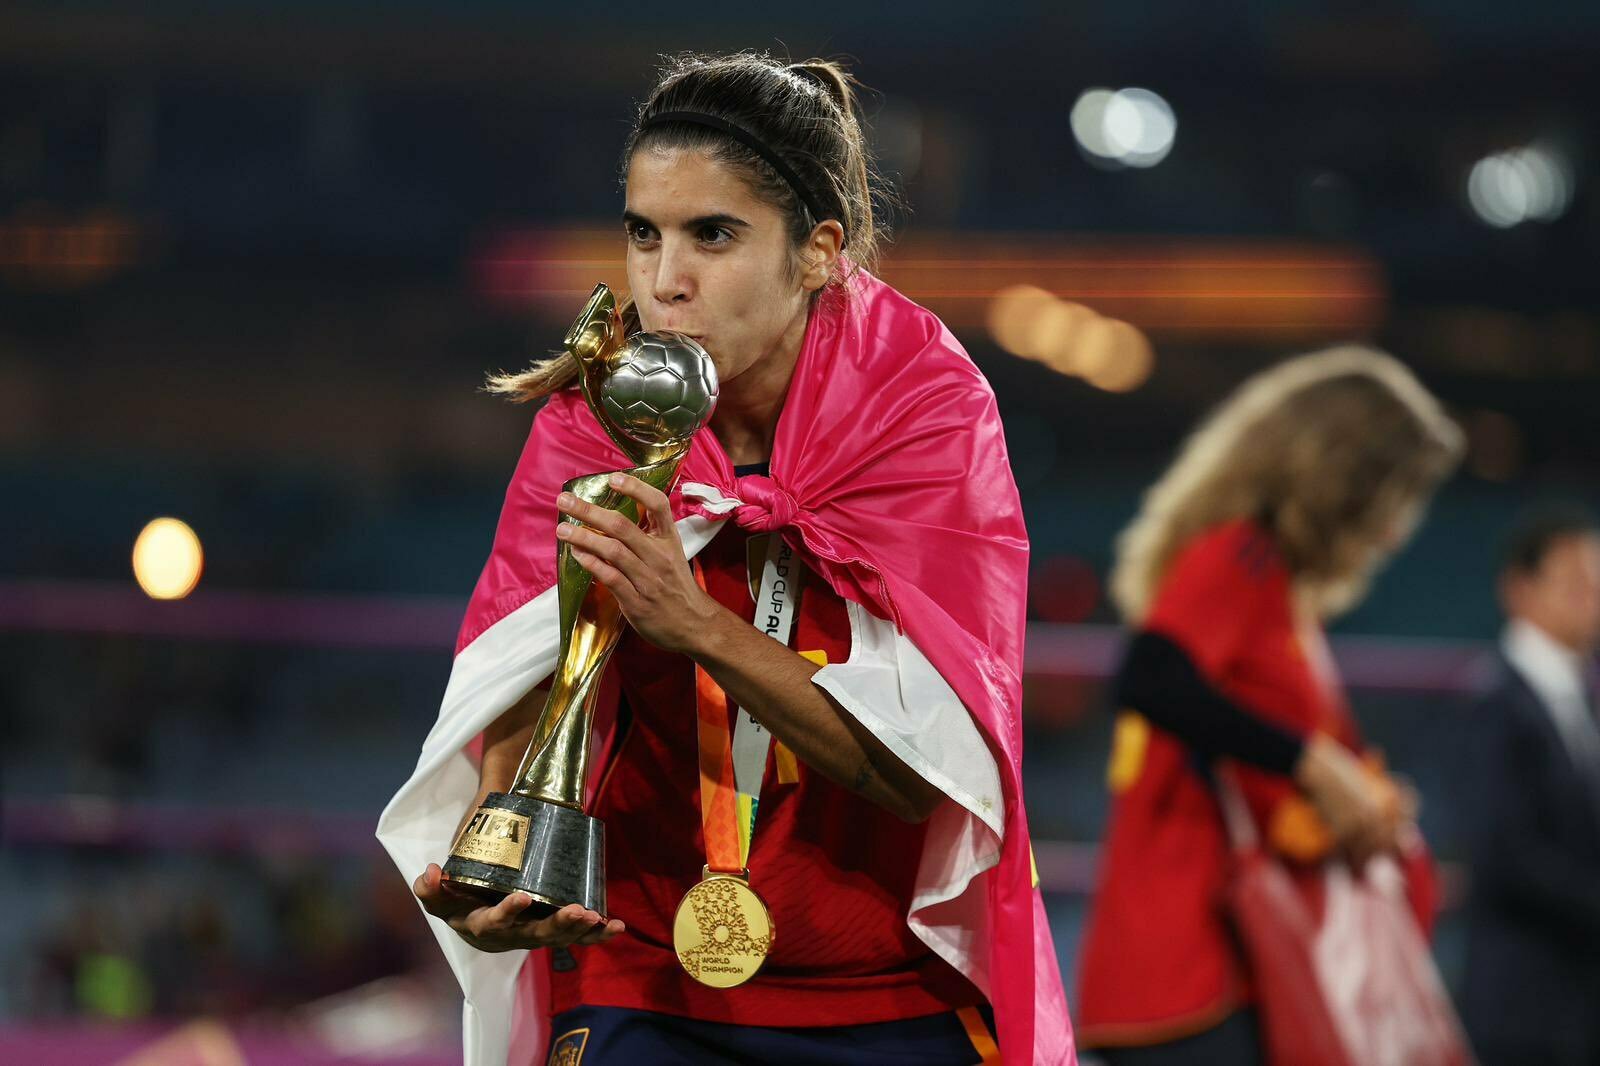 El Levante UD hará un regalo a todas las campeonas del Mundo empezando por la atlético Eva Navarro